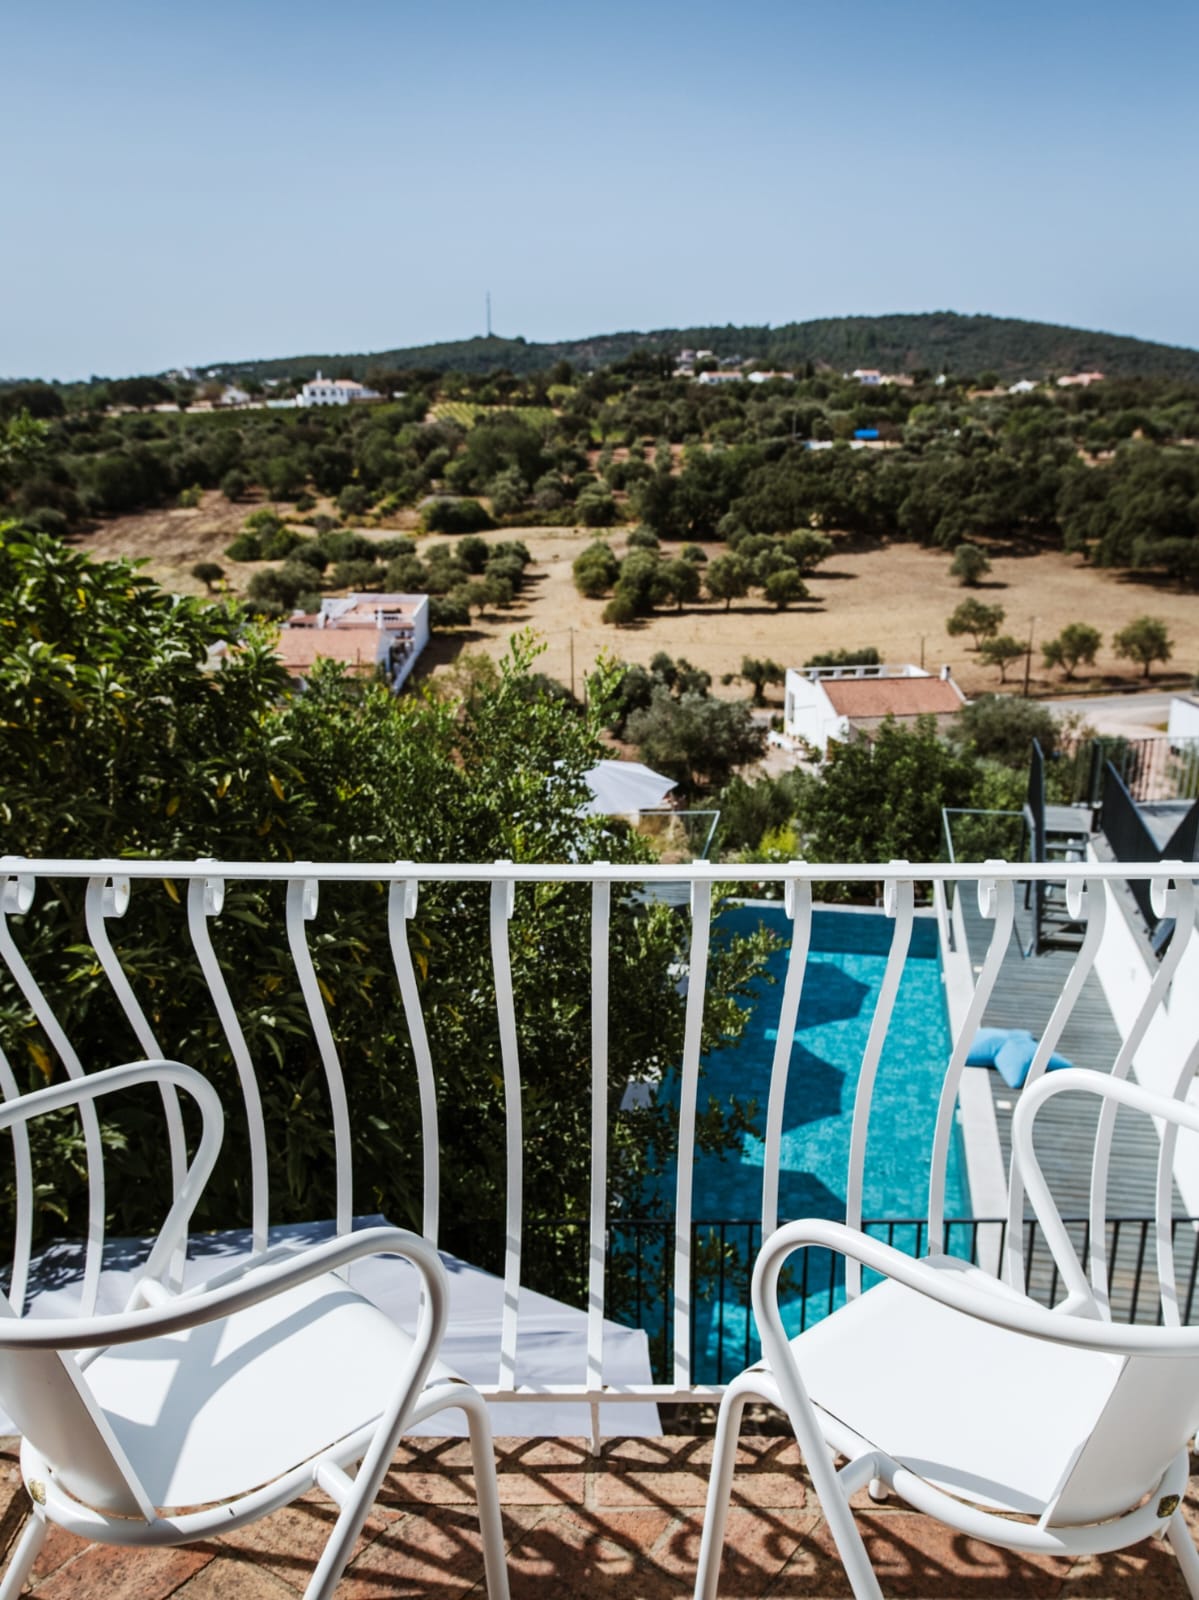 Vista da suite do terraço da casa de férias para a cidade de Alportel